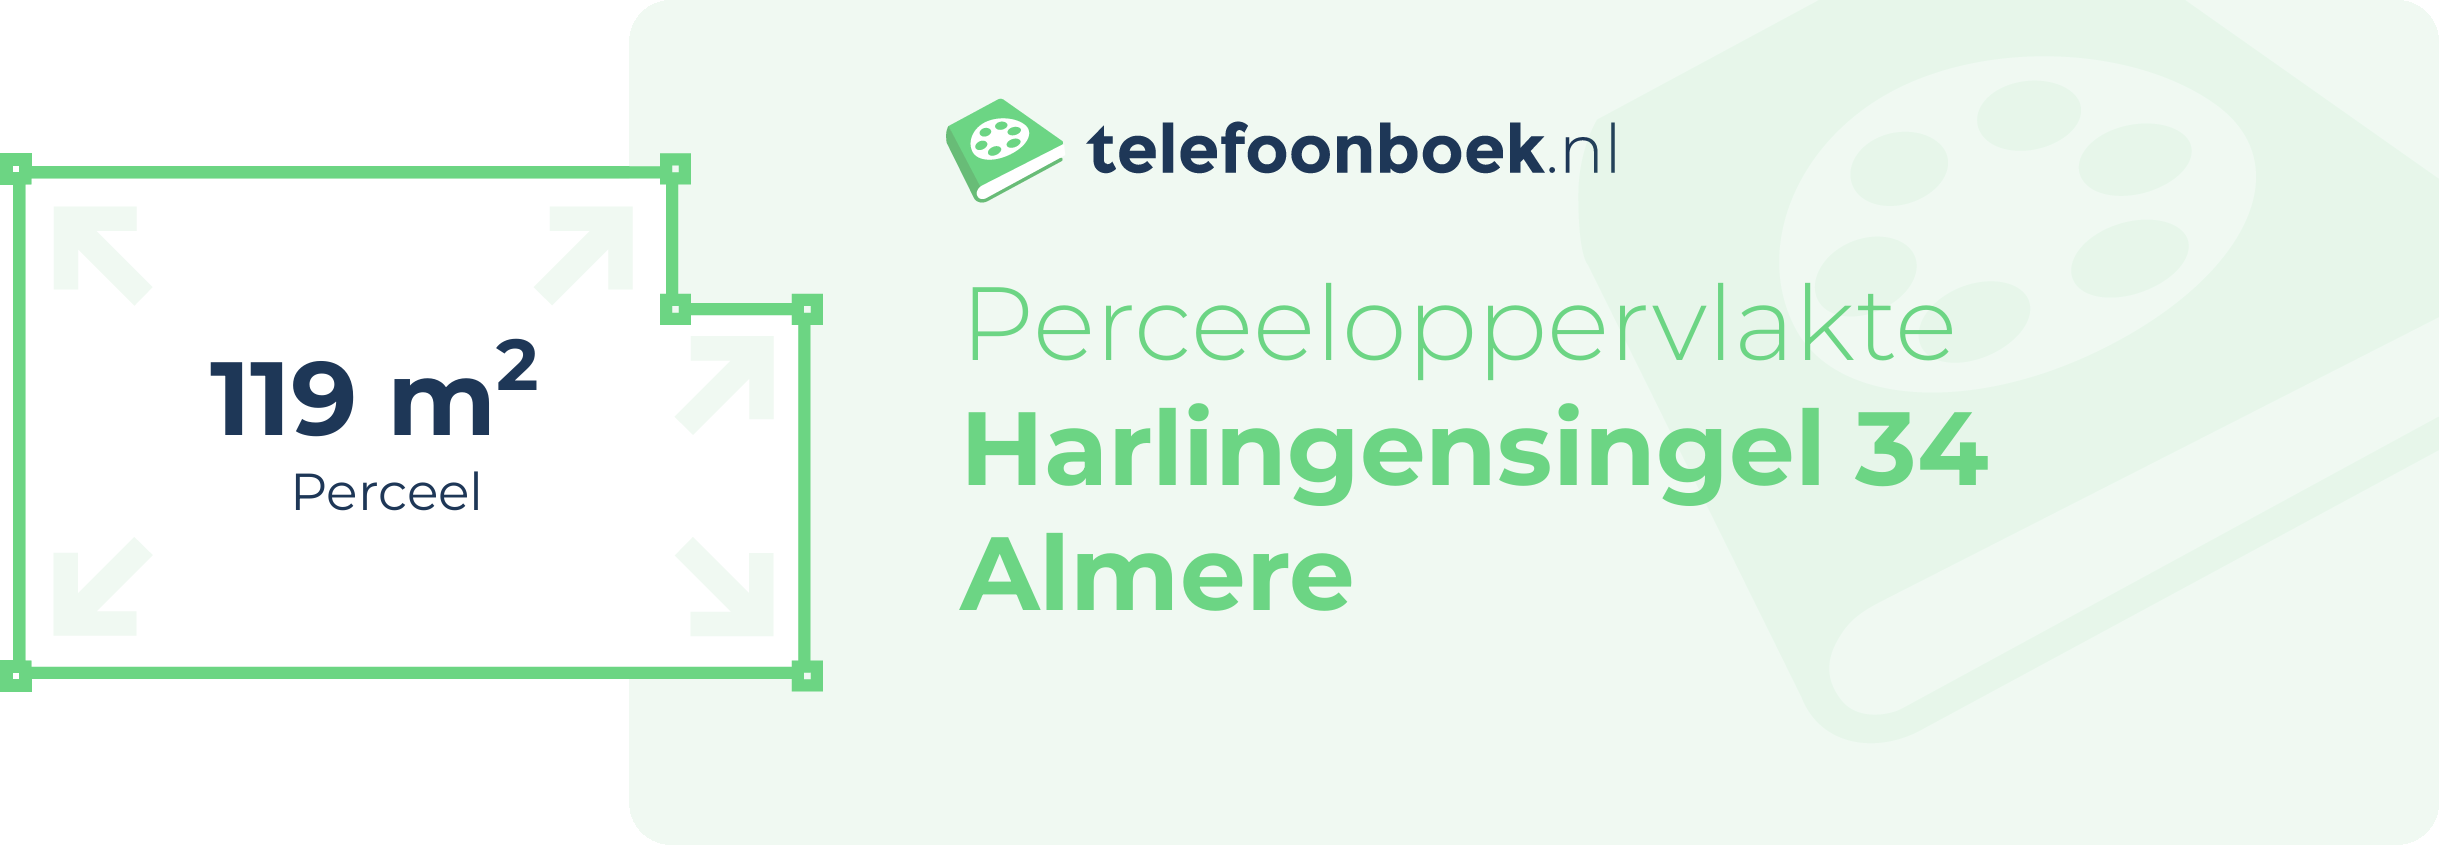 Perceeloppervlakte Harlingensingel 34 Almere